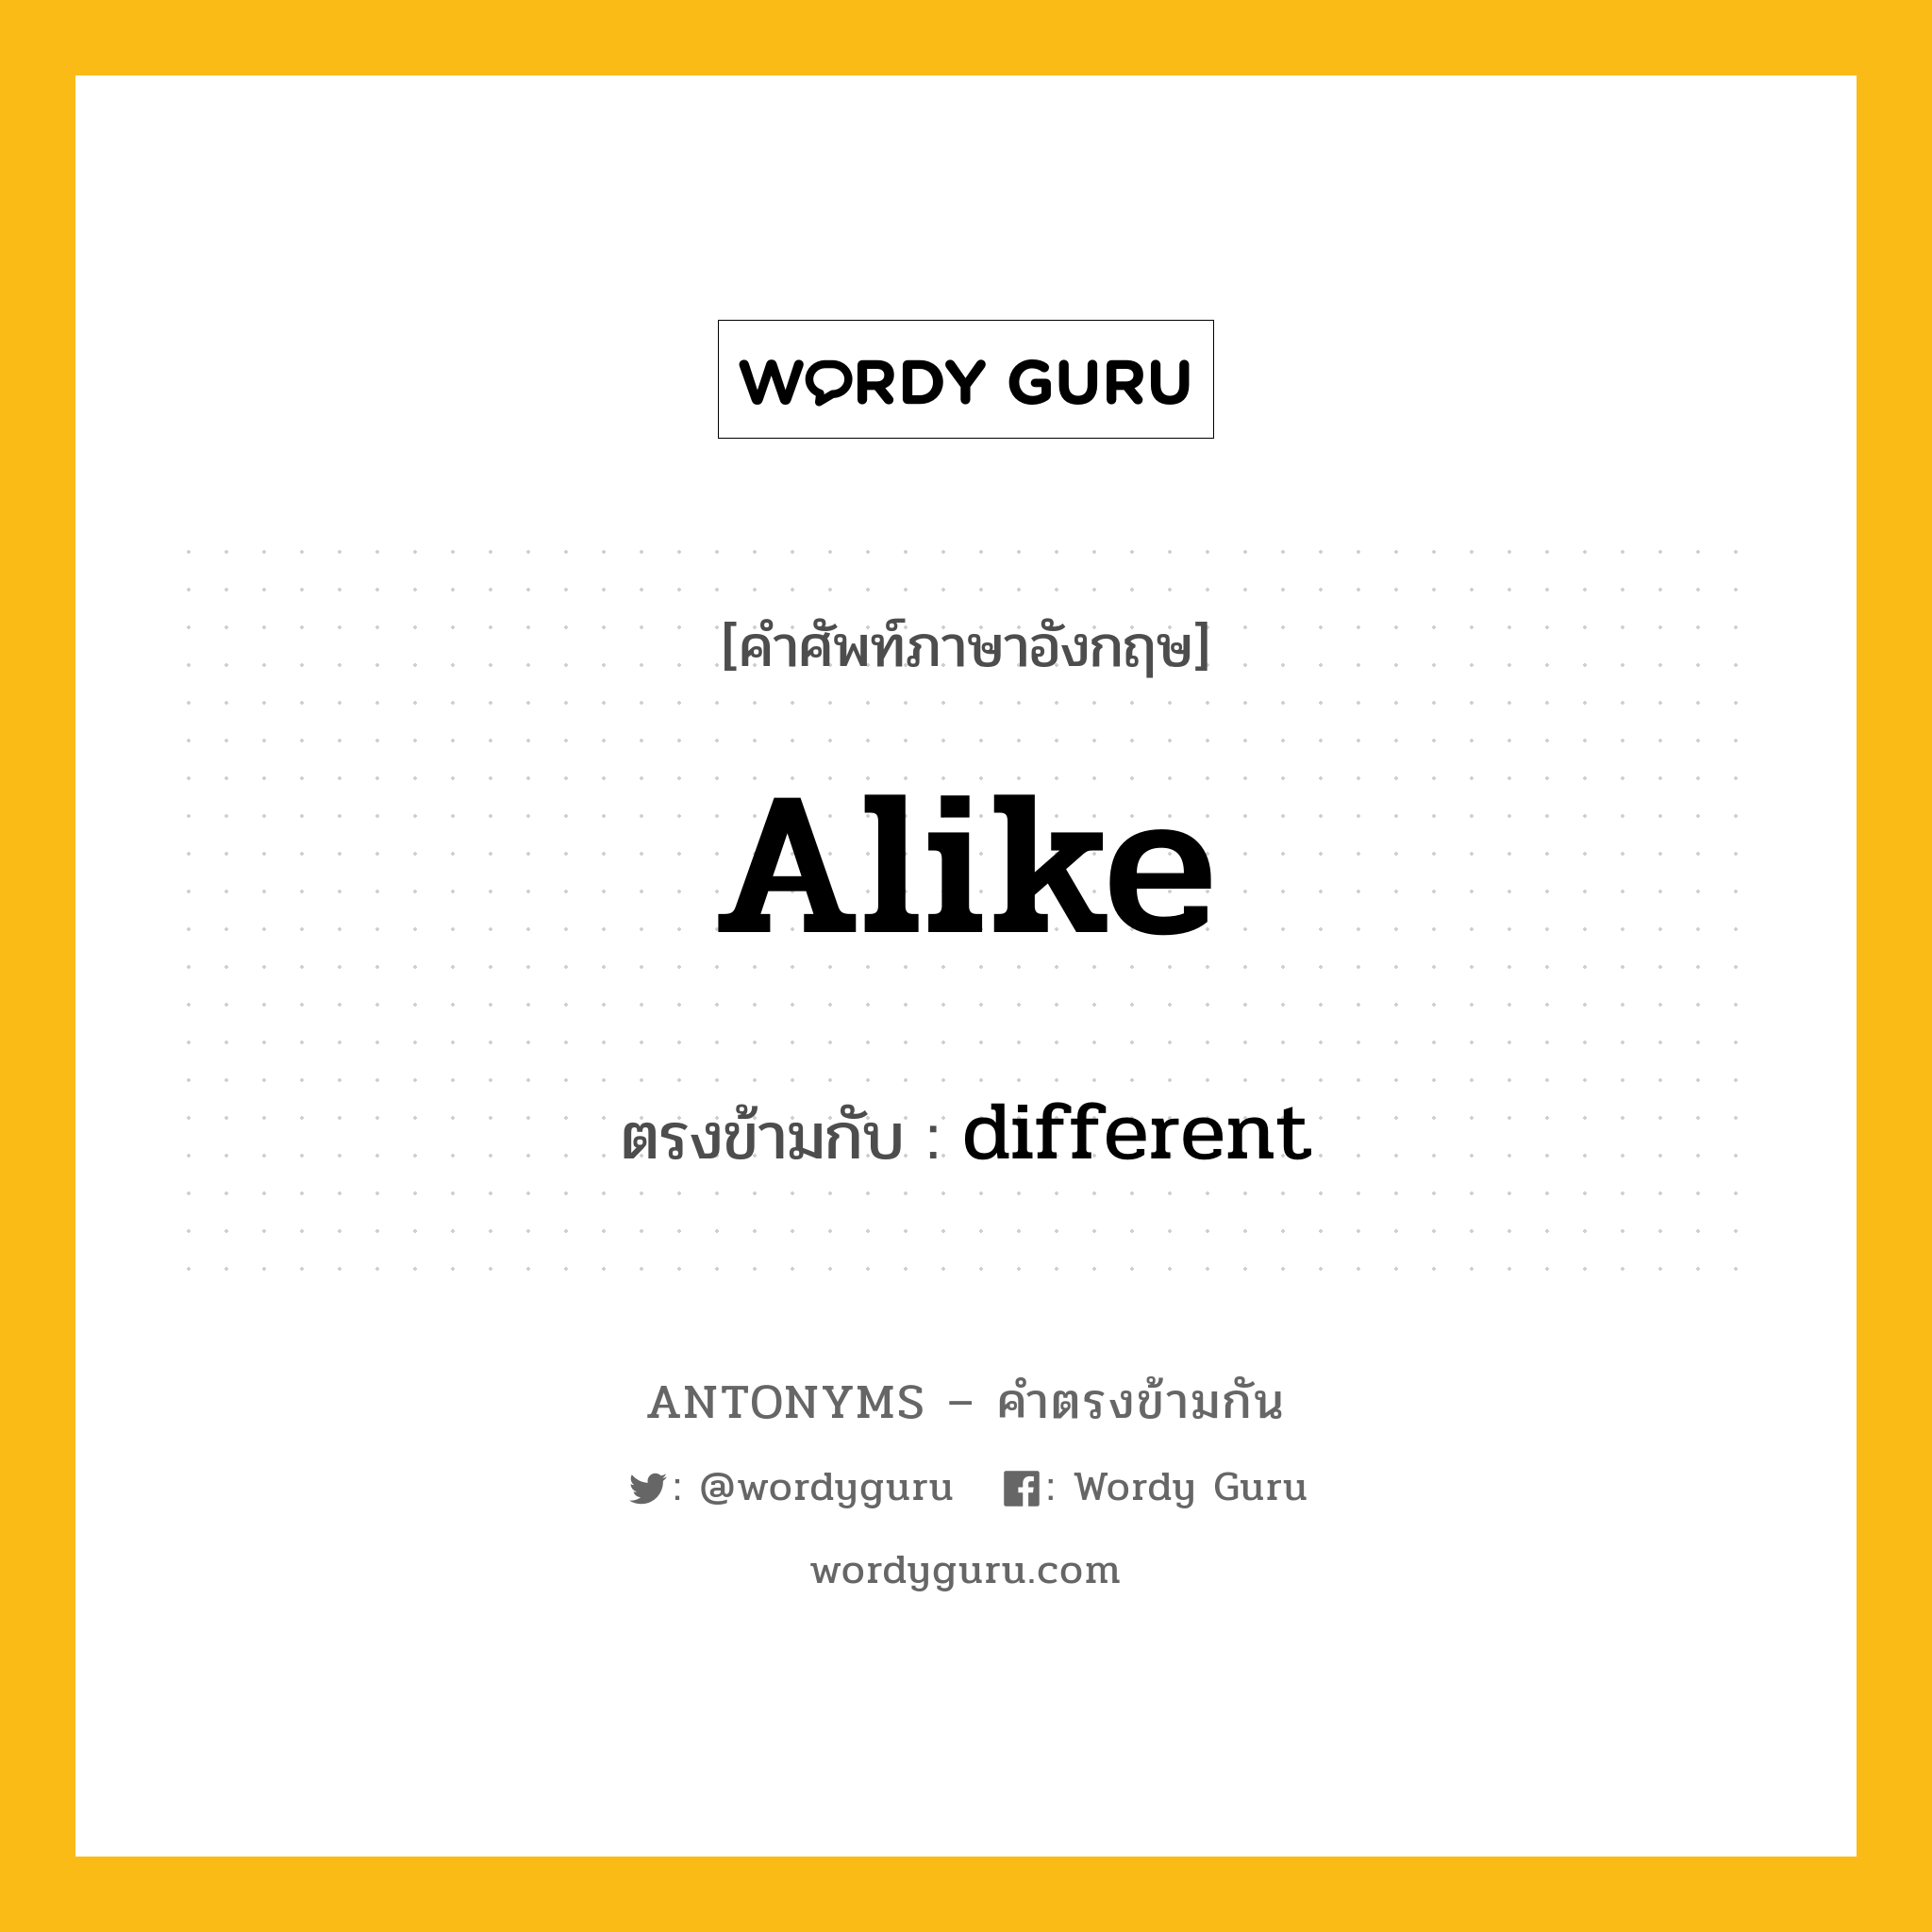 alike เป็นคำตรงข้ามกับคำไหนบ้าง?, คำศัพท์ภาษาอังกฤษที่มีความหมายตรงข้ามกัน alike ตรงข้ามกับ different หมวด different